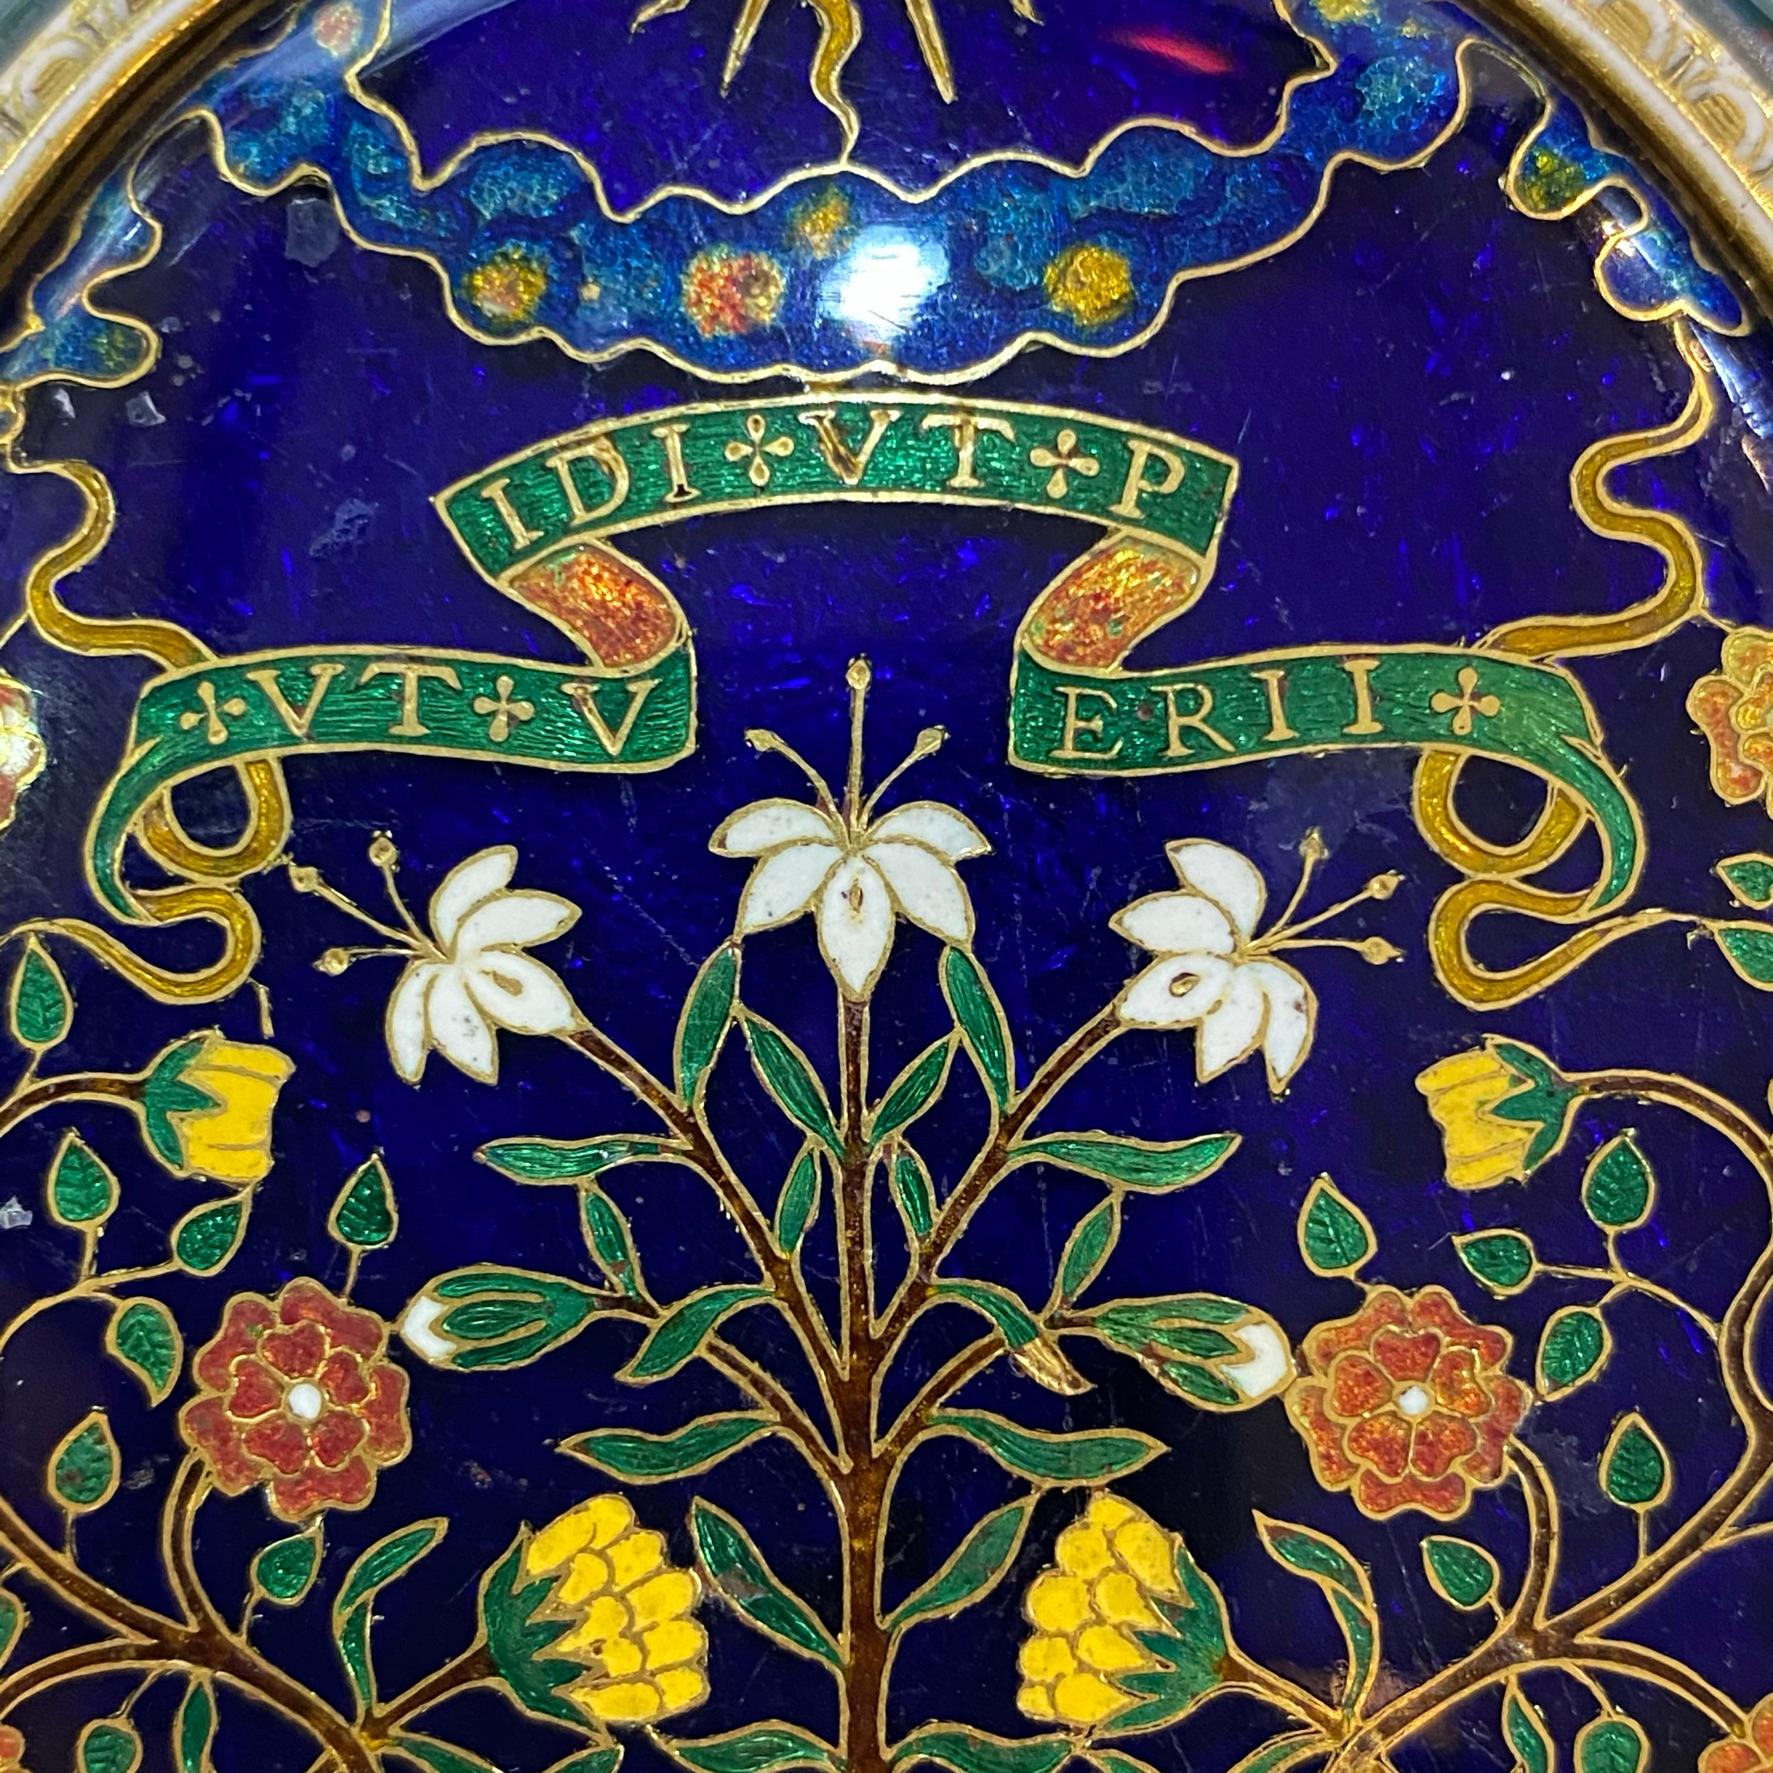 Renaissance Revival Medieval Style Cloisonne Enamel Mirror Pendant with Latin Inscriptions